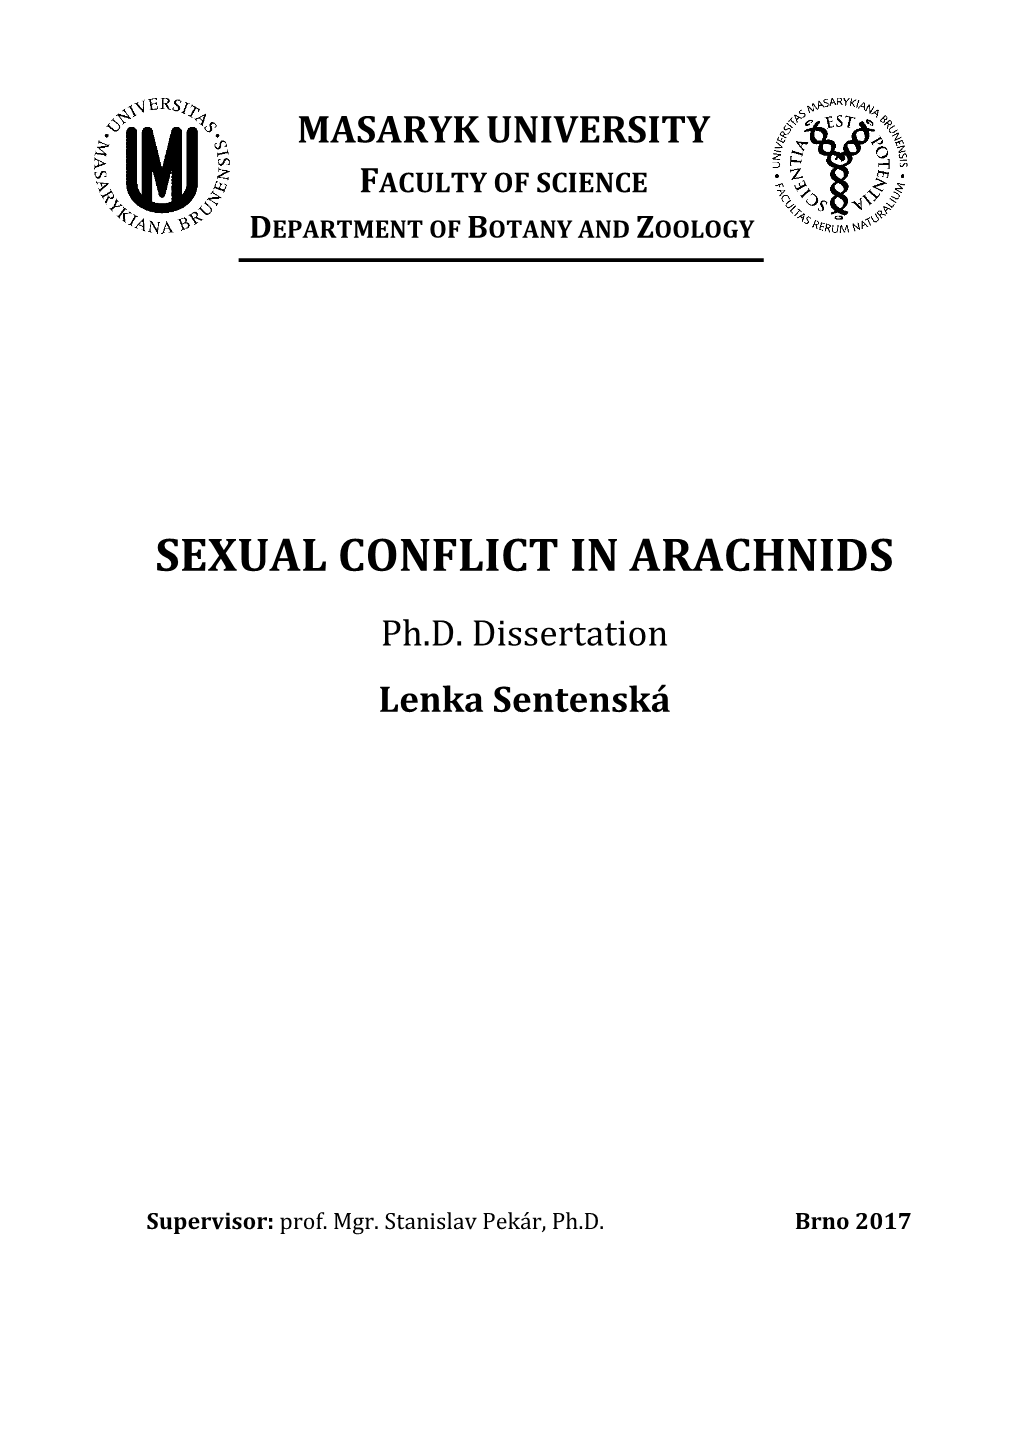 SEXUAL CONFLICT in ARACHNIDS Ph.D